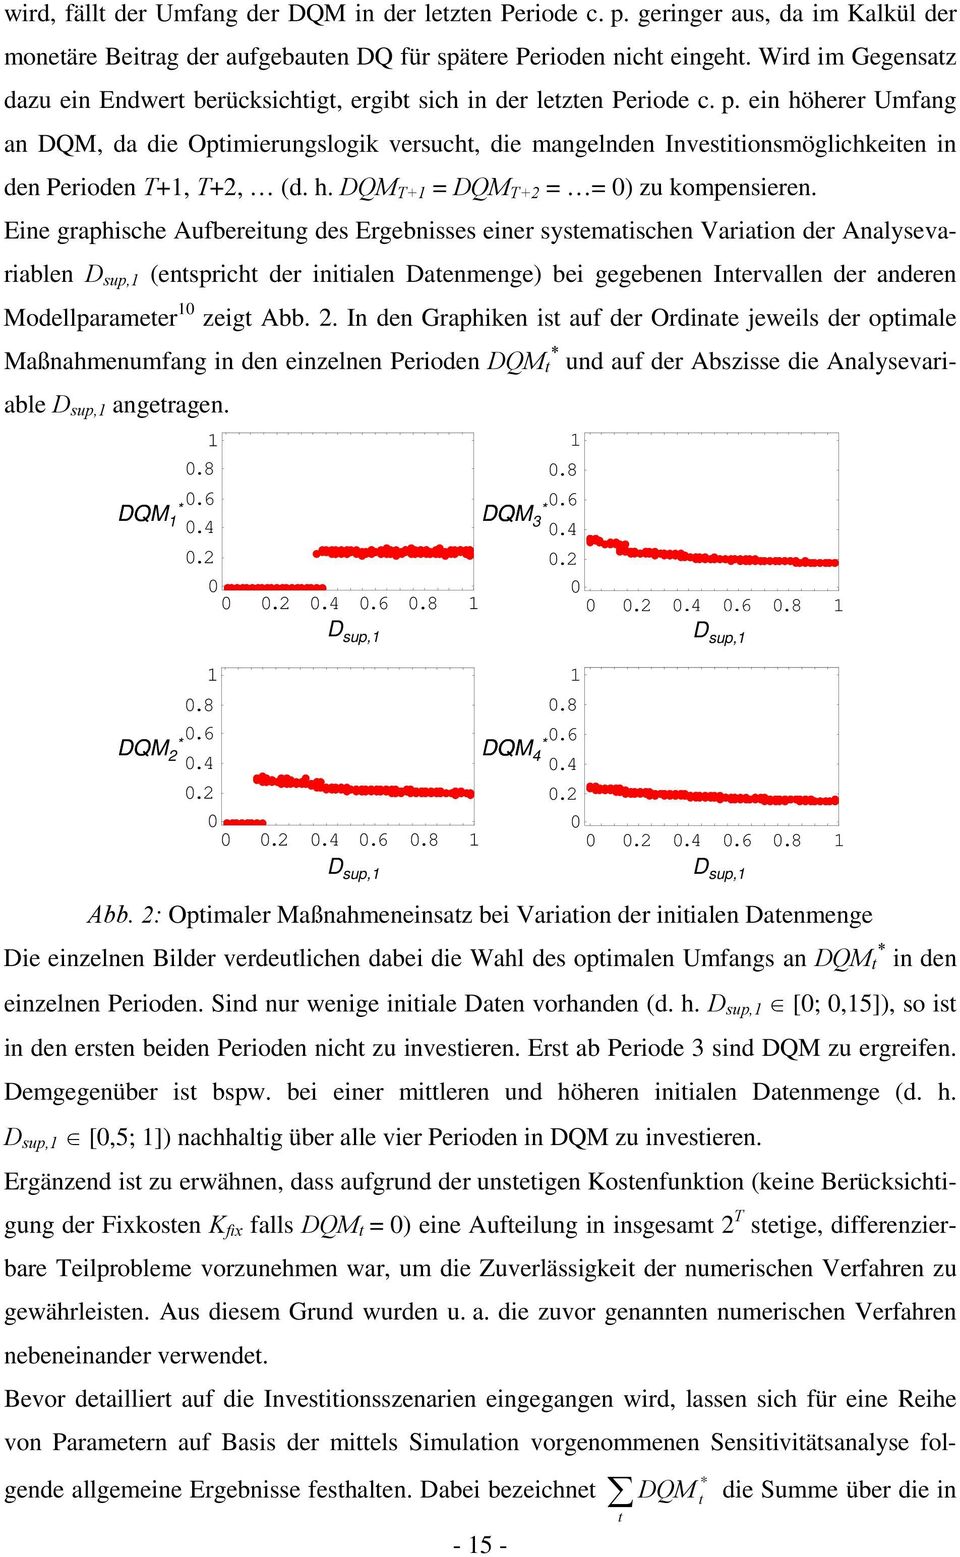 ein höherer Umfang an DQM, da die Opimierungslogik versuch, die mangelnden Invesiionsmöglichkeien in den Perioden T+, T+2, (d. h. DQM T+ = DQM T+2 = = 0) zu kompensieren.